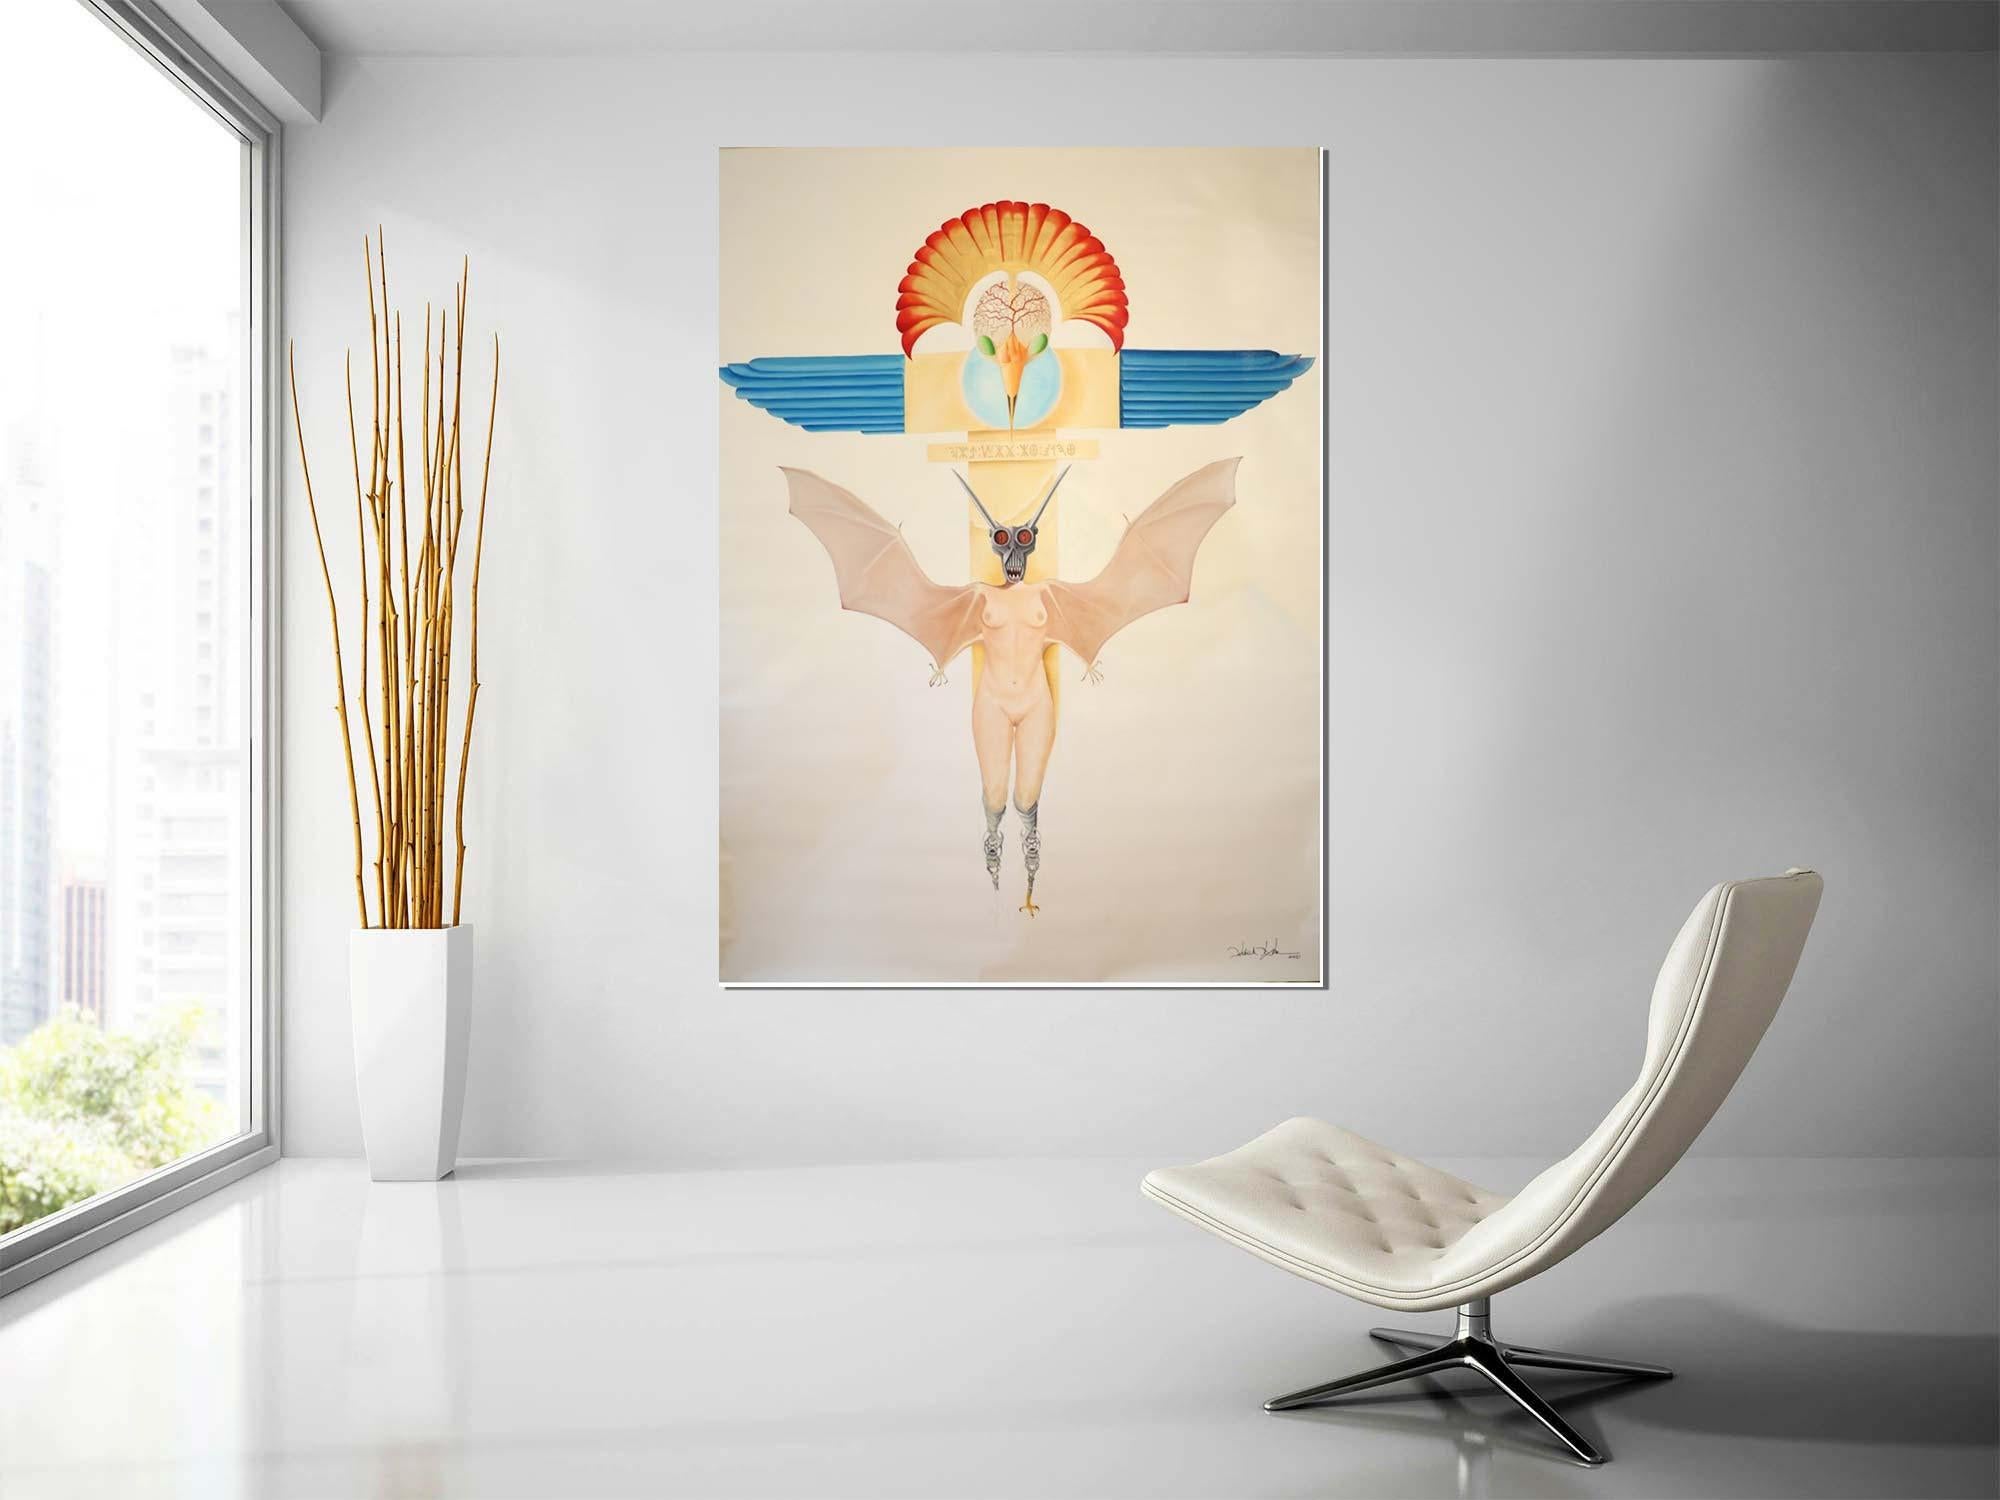 Wings of Fascism - Öl auf Leinwand - Zeitgenössisches Gemälde (Surrealismus), Painting, von Patrick Faure